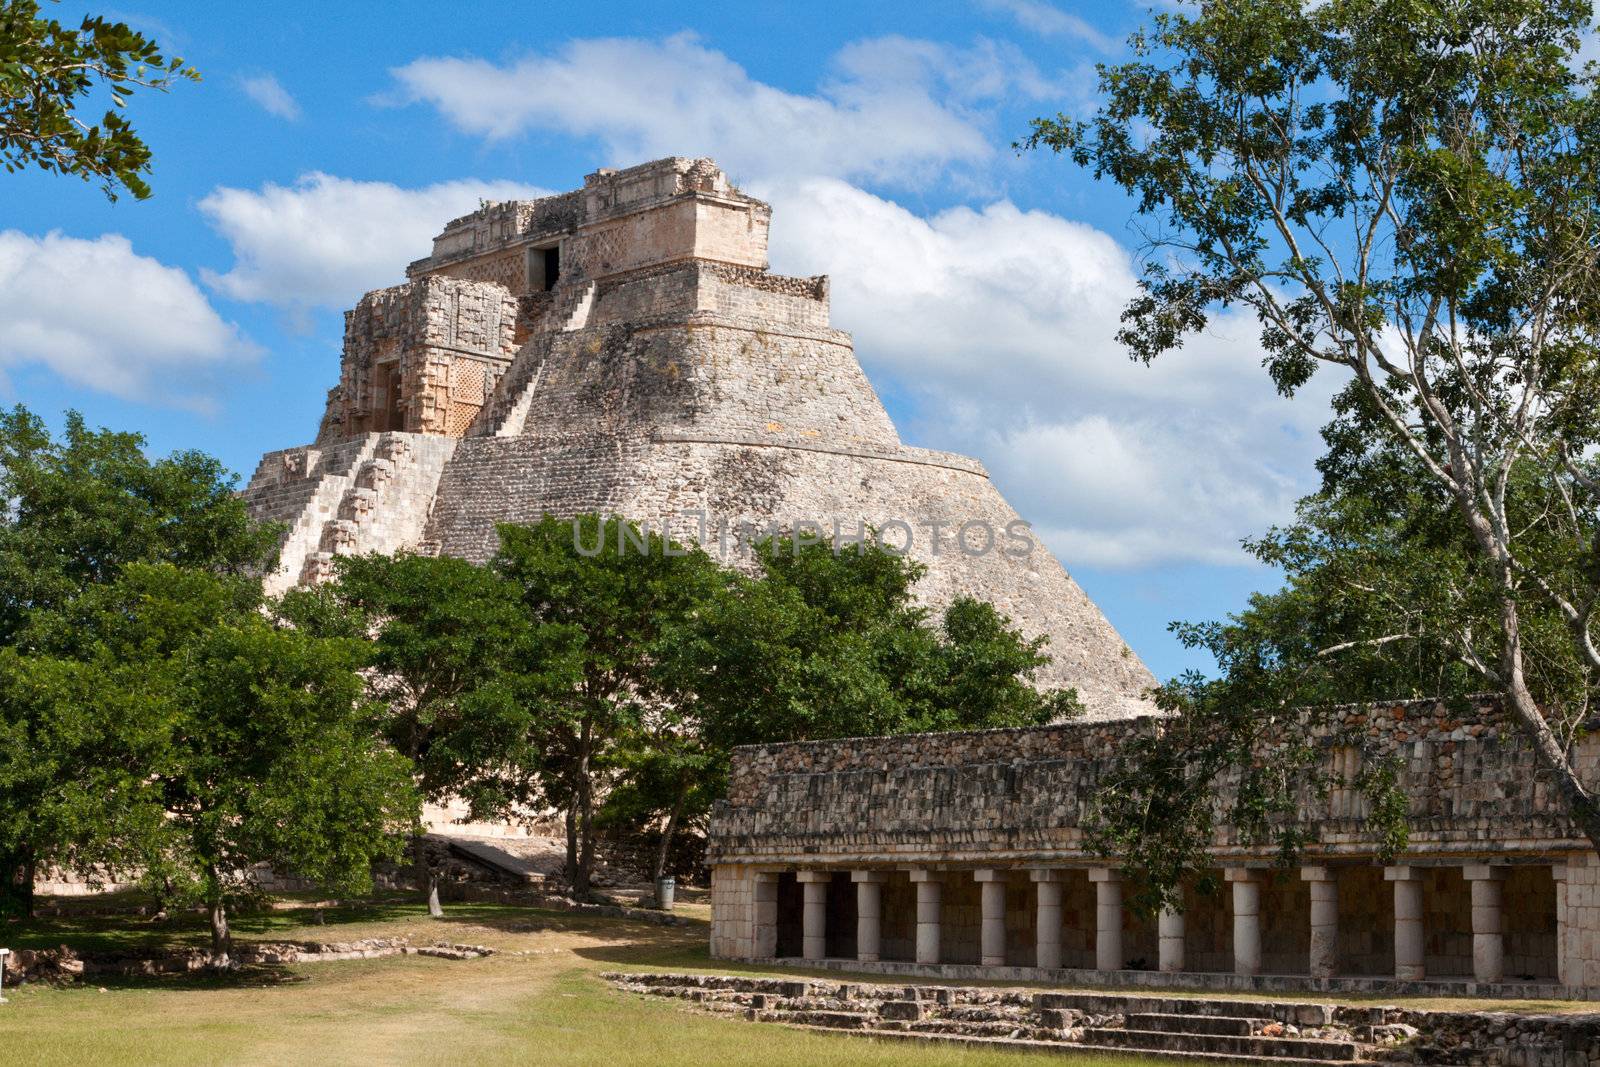 Anicent mayan pyramid (Pyramid of the Magician, Adivino) in Uxmal, Merida, Yucatan, Mexico